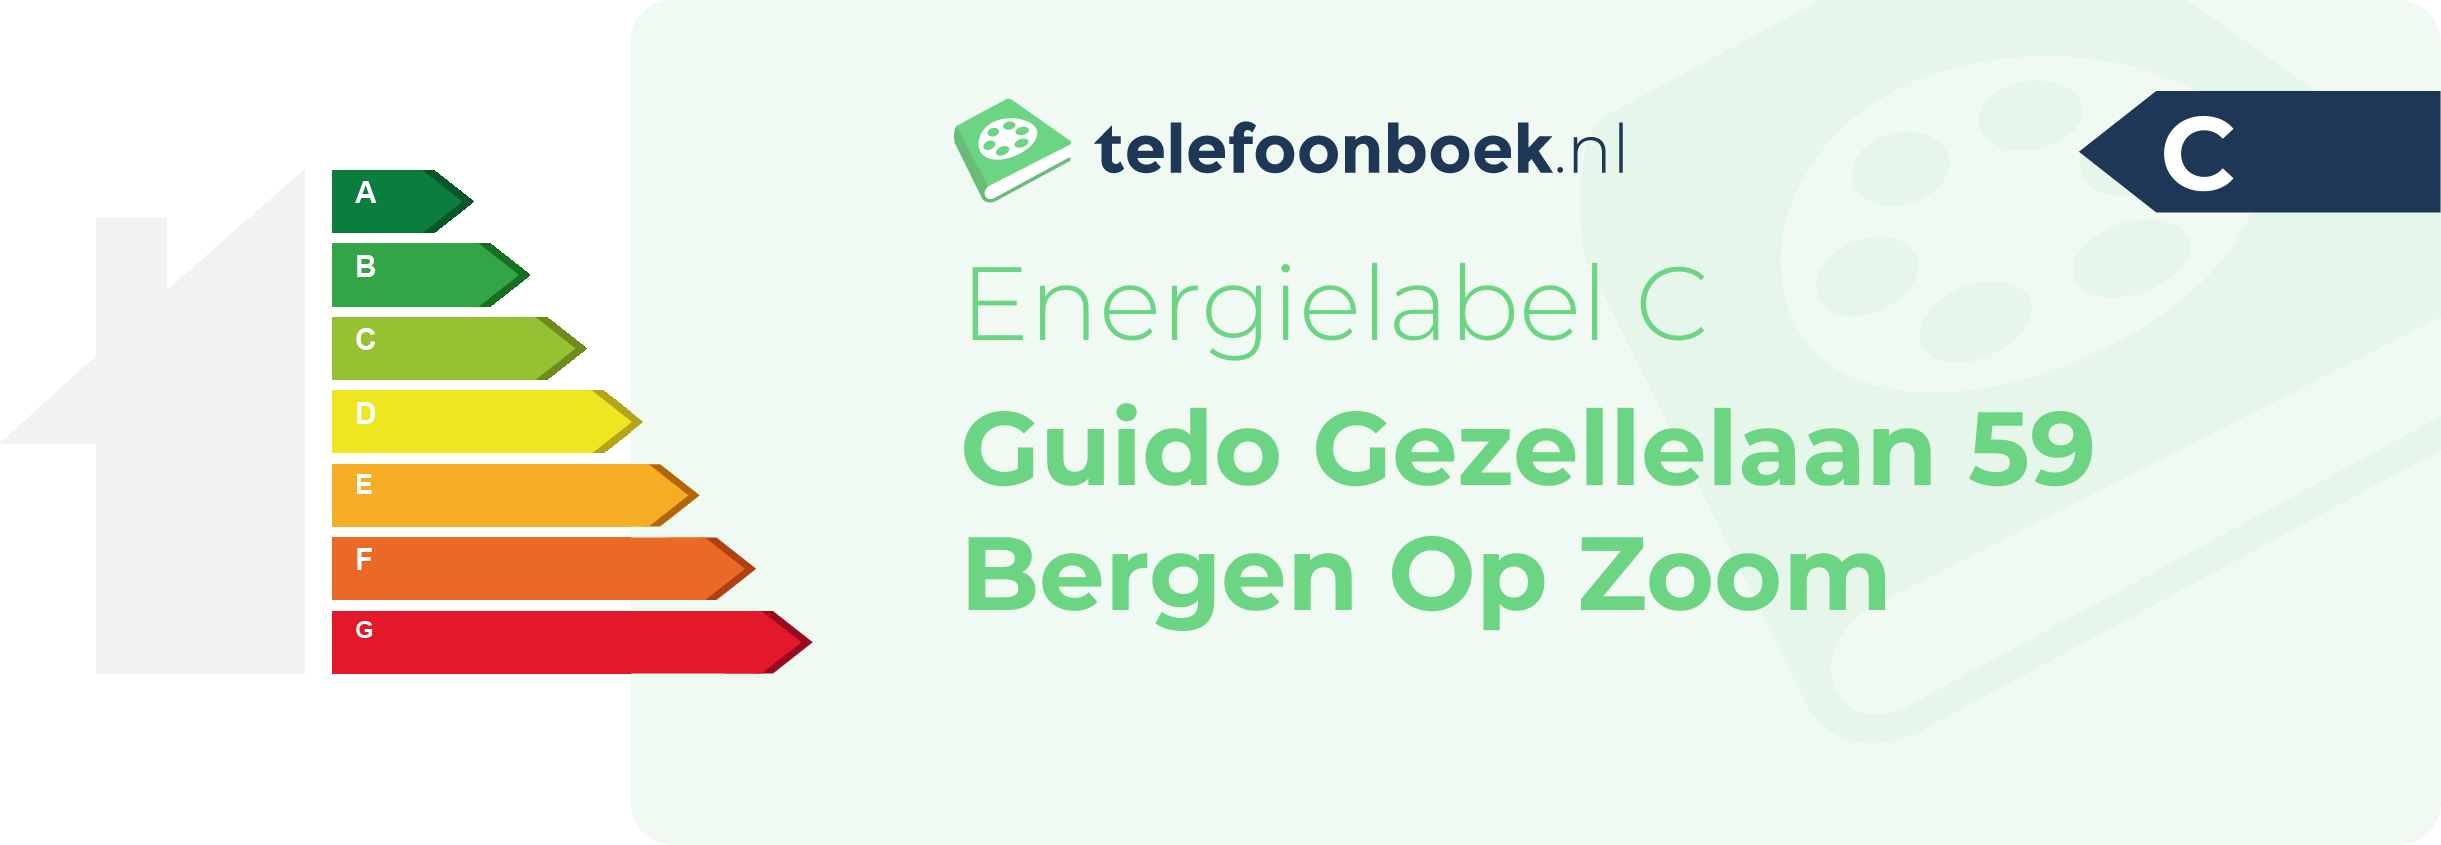 Energielabel Guido Gezellelaan 59 Bergen Op Zoom